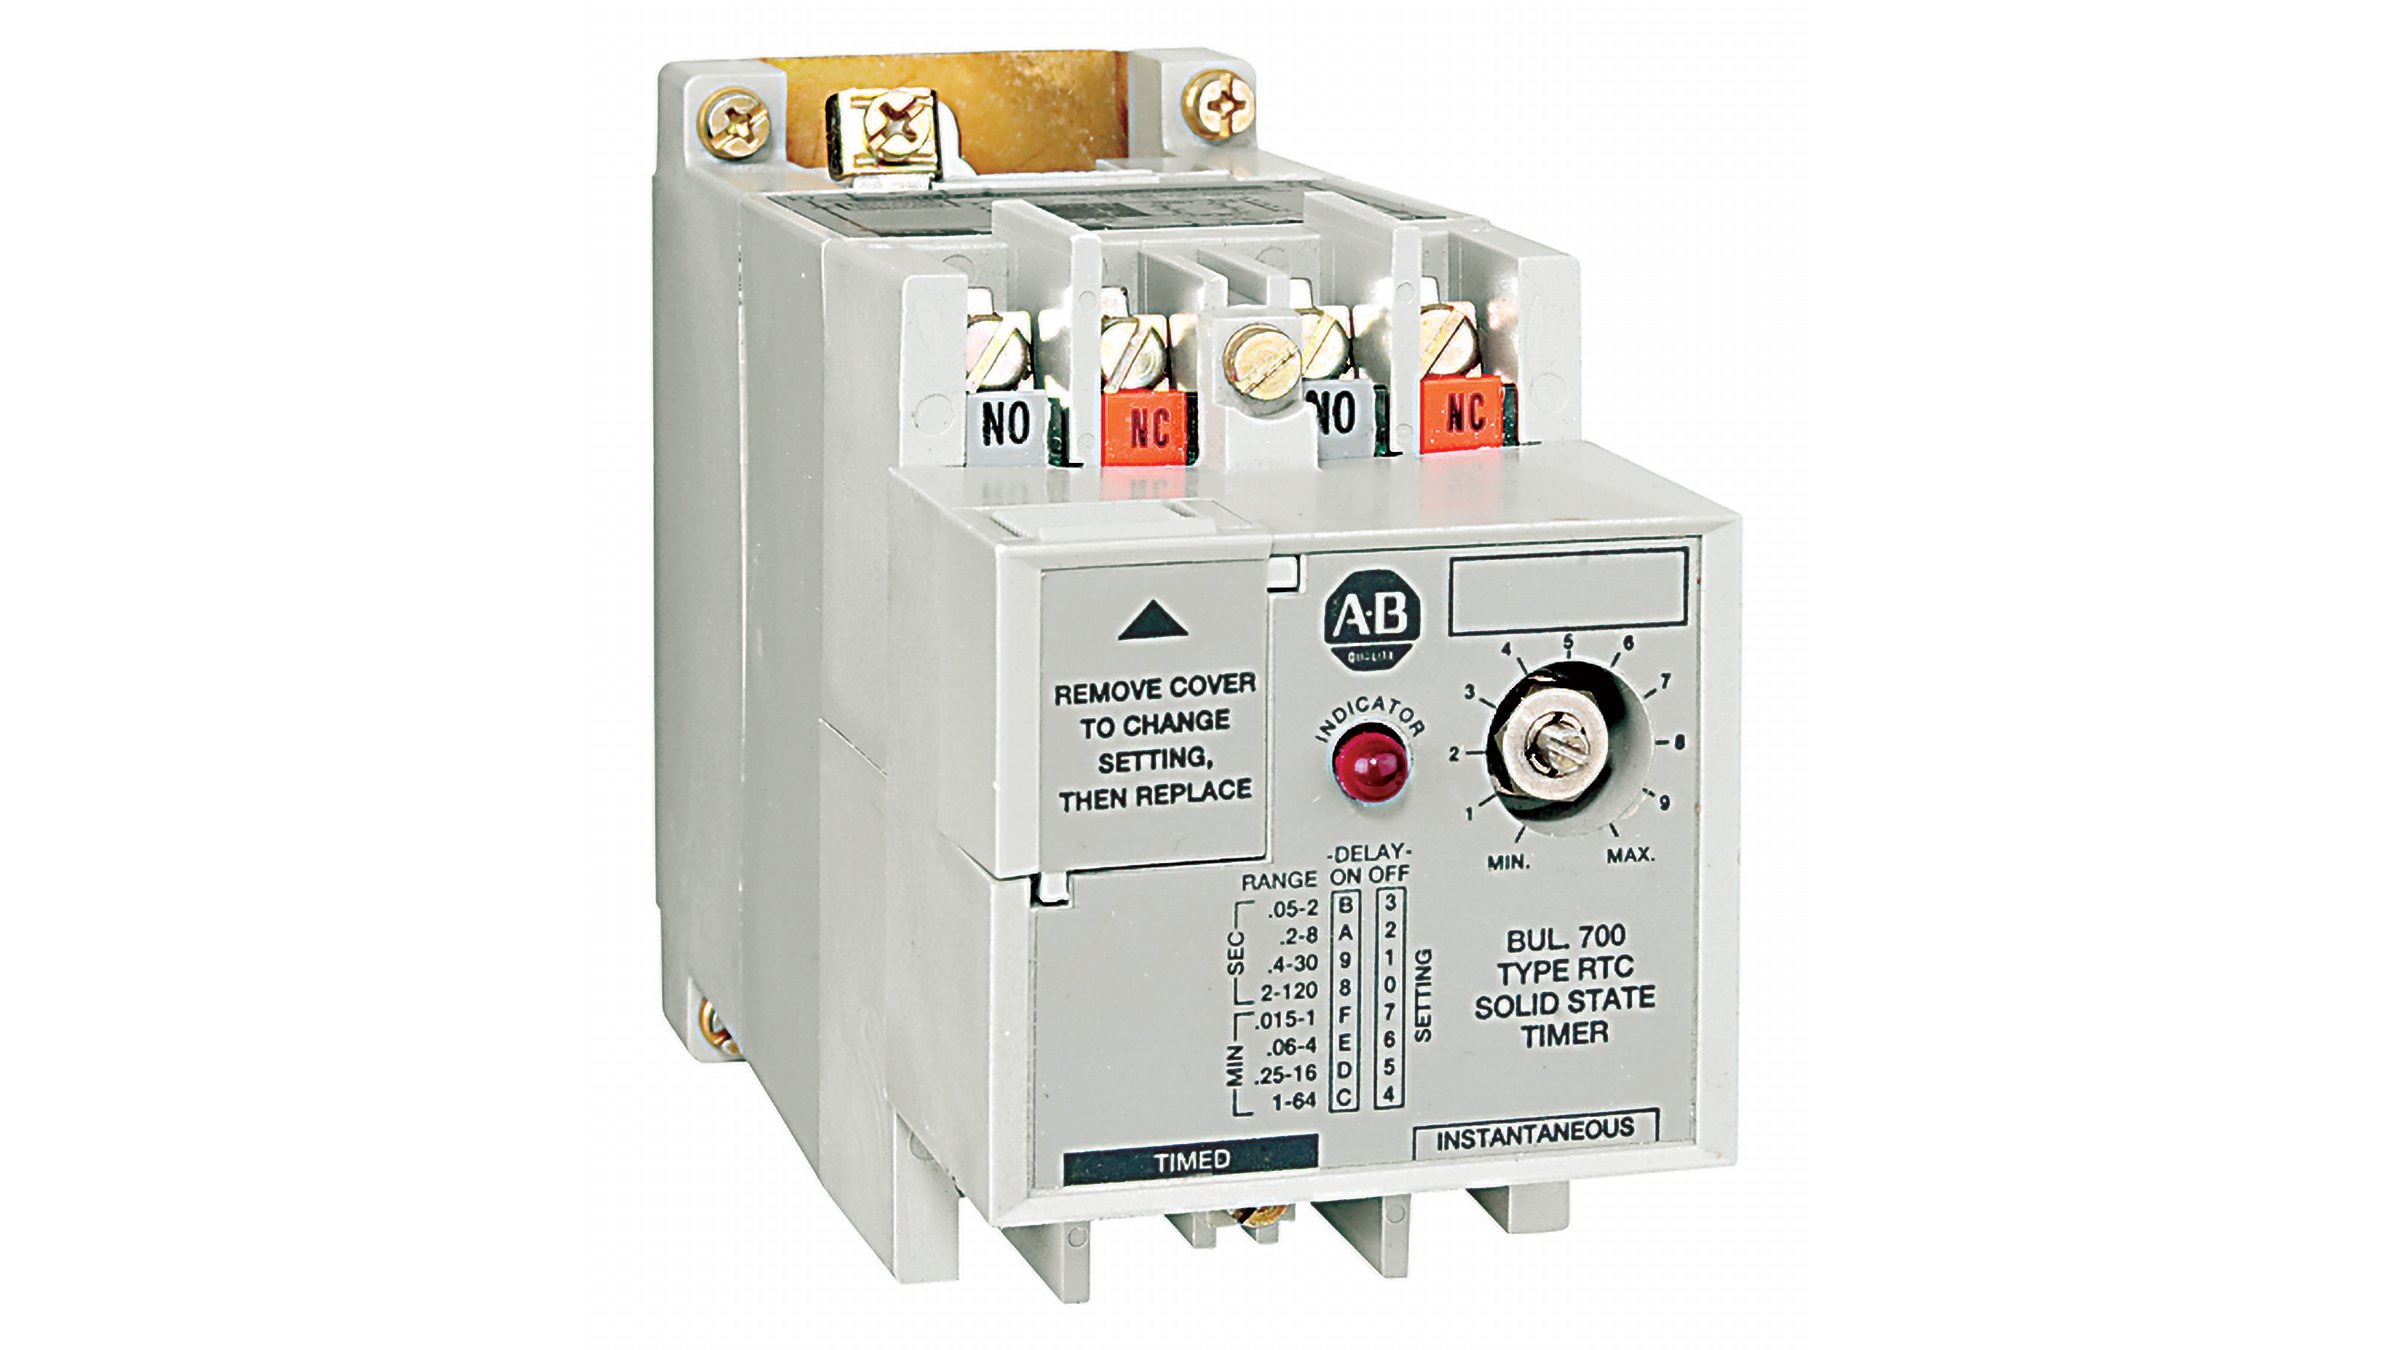 Allen-Bradley Bulletin 700-RTC 固态型定时继电器是固定定时继电器，专为需要特定时间延迟的应用（必须避免意外的定时改变）而设计。